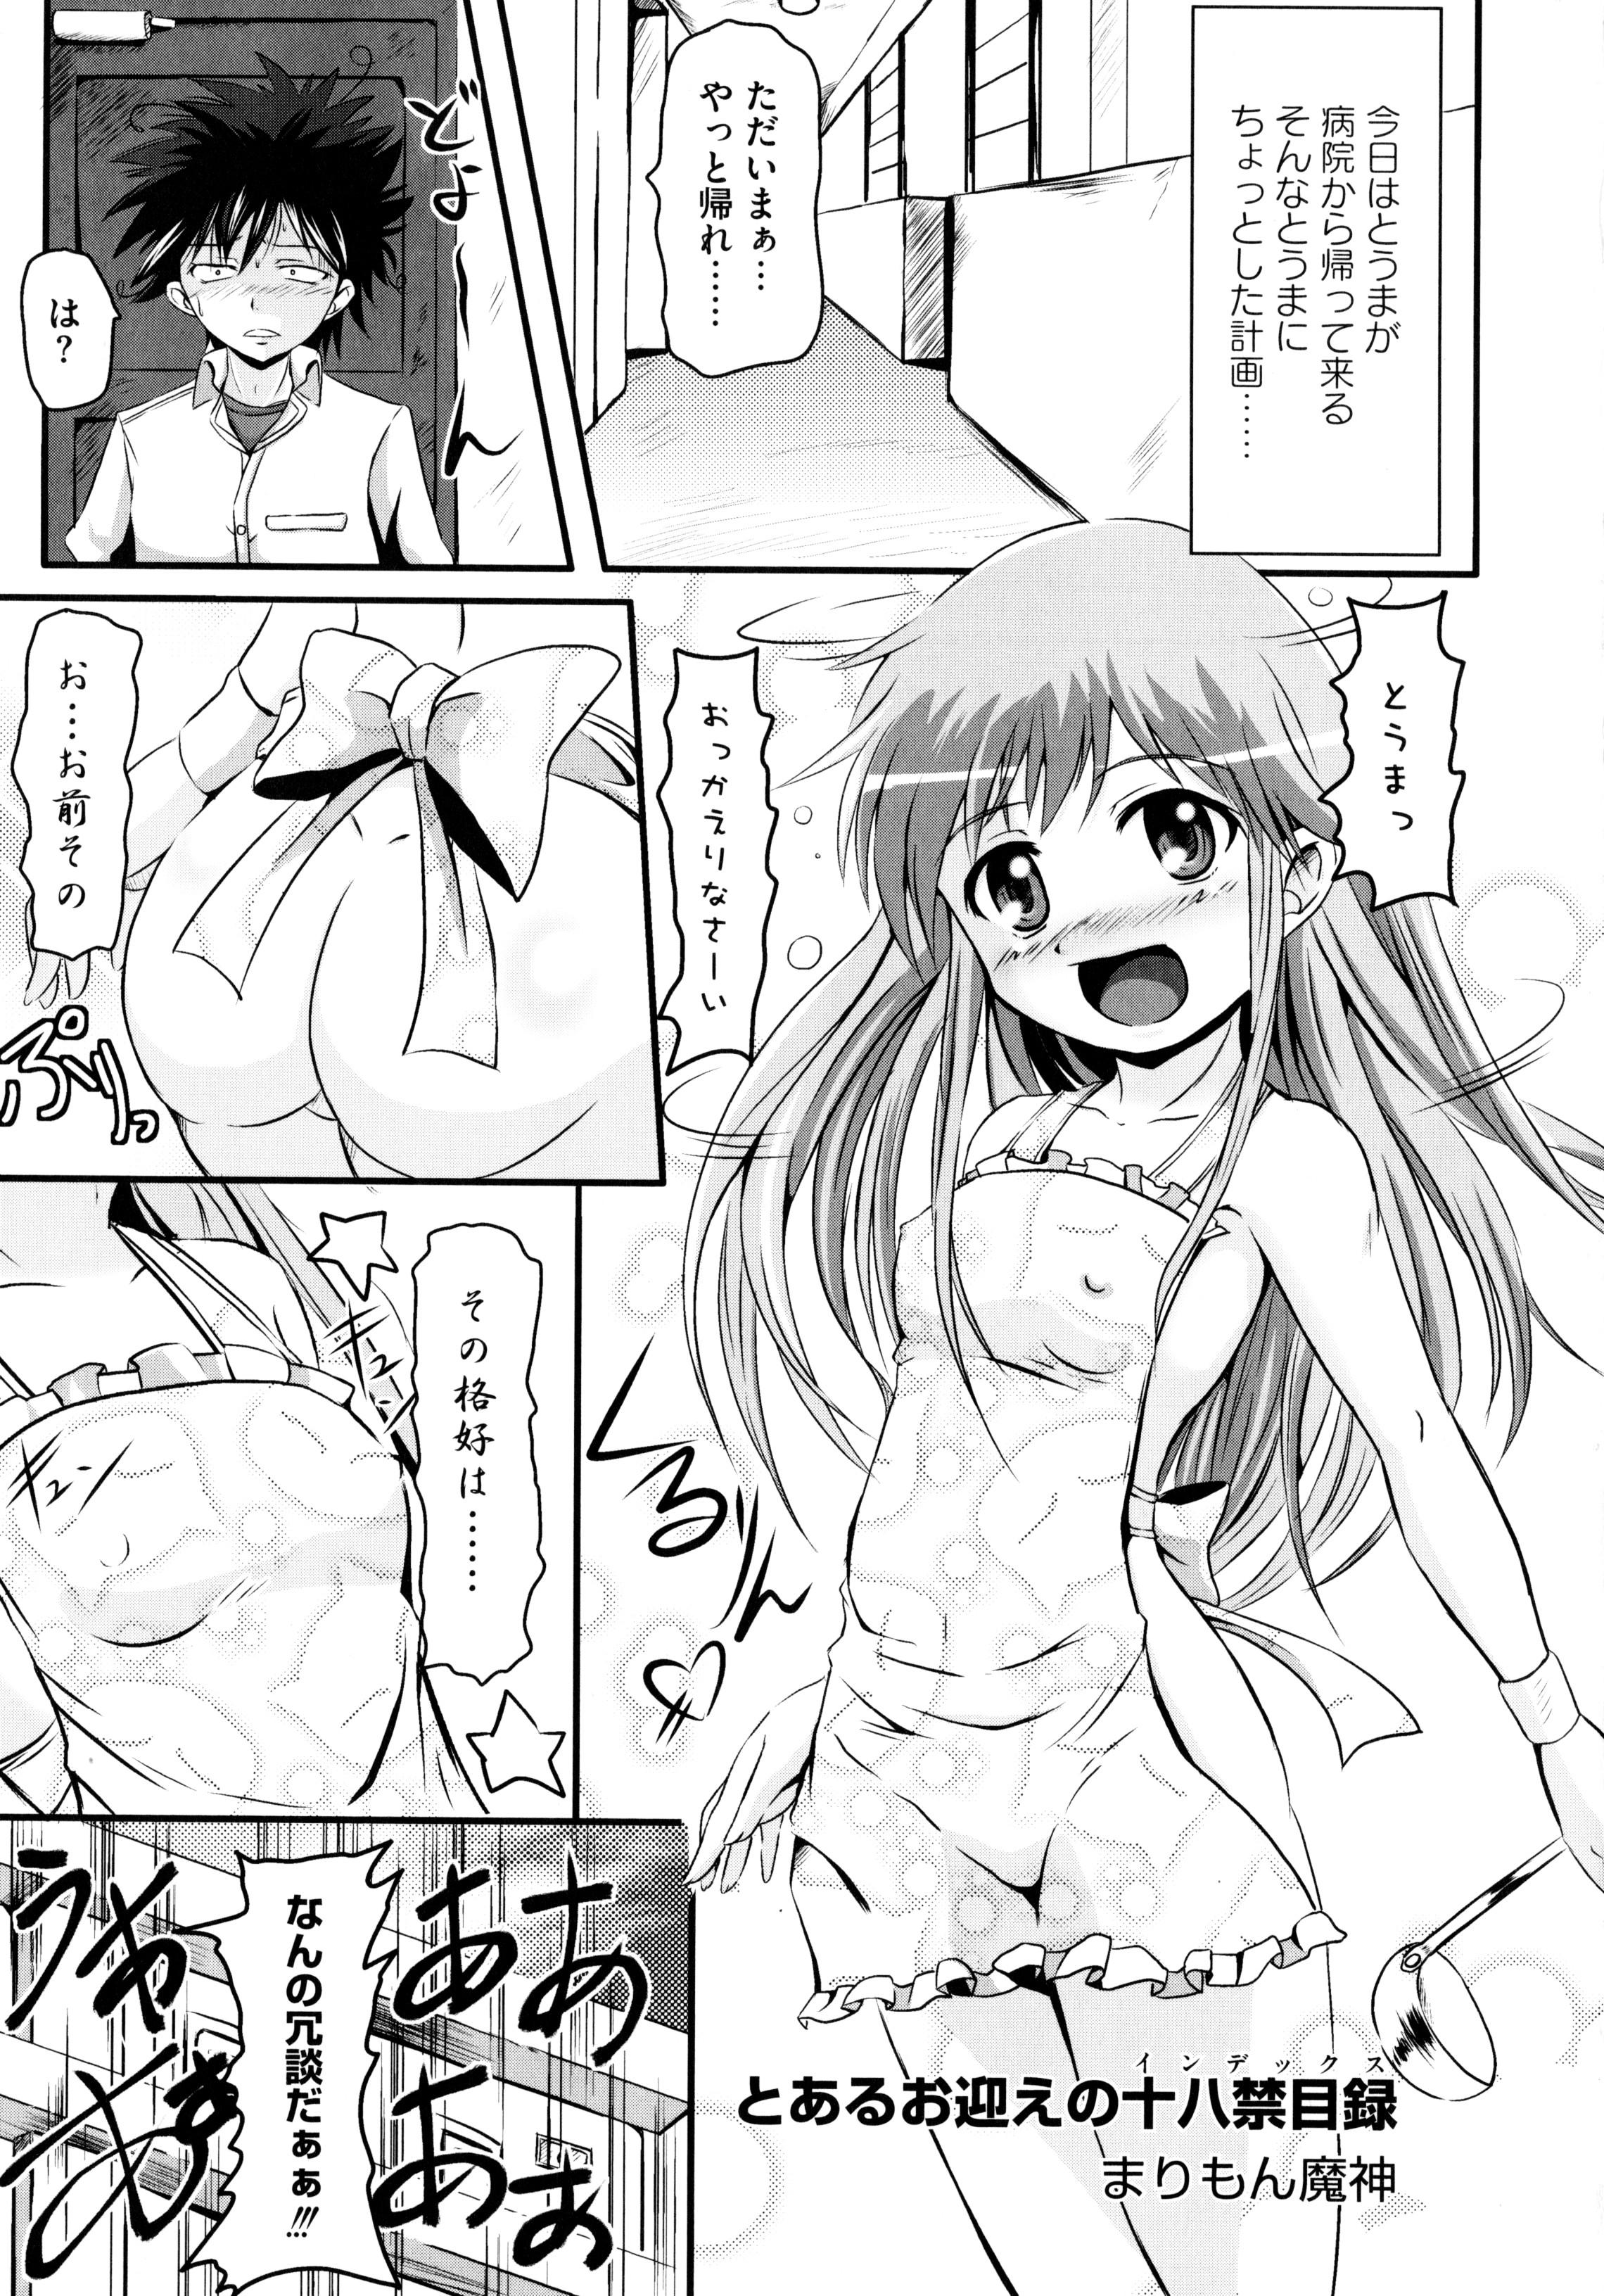 Pussy Licking Toaru Inbi na Erosho Mokuroku - Toaru kagaku no railgun Toaru majutsu no index Amateur Porn - Page 5